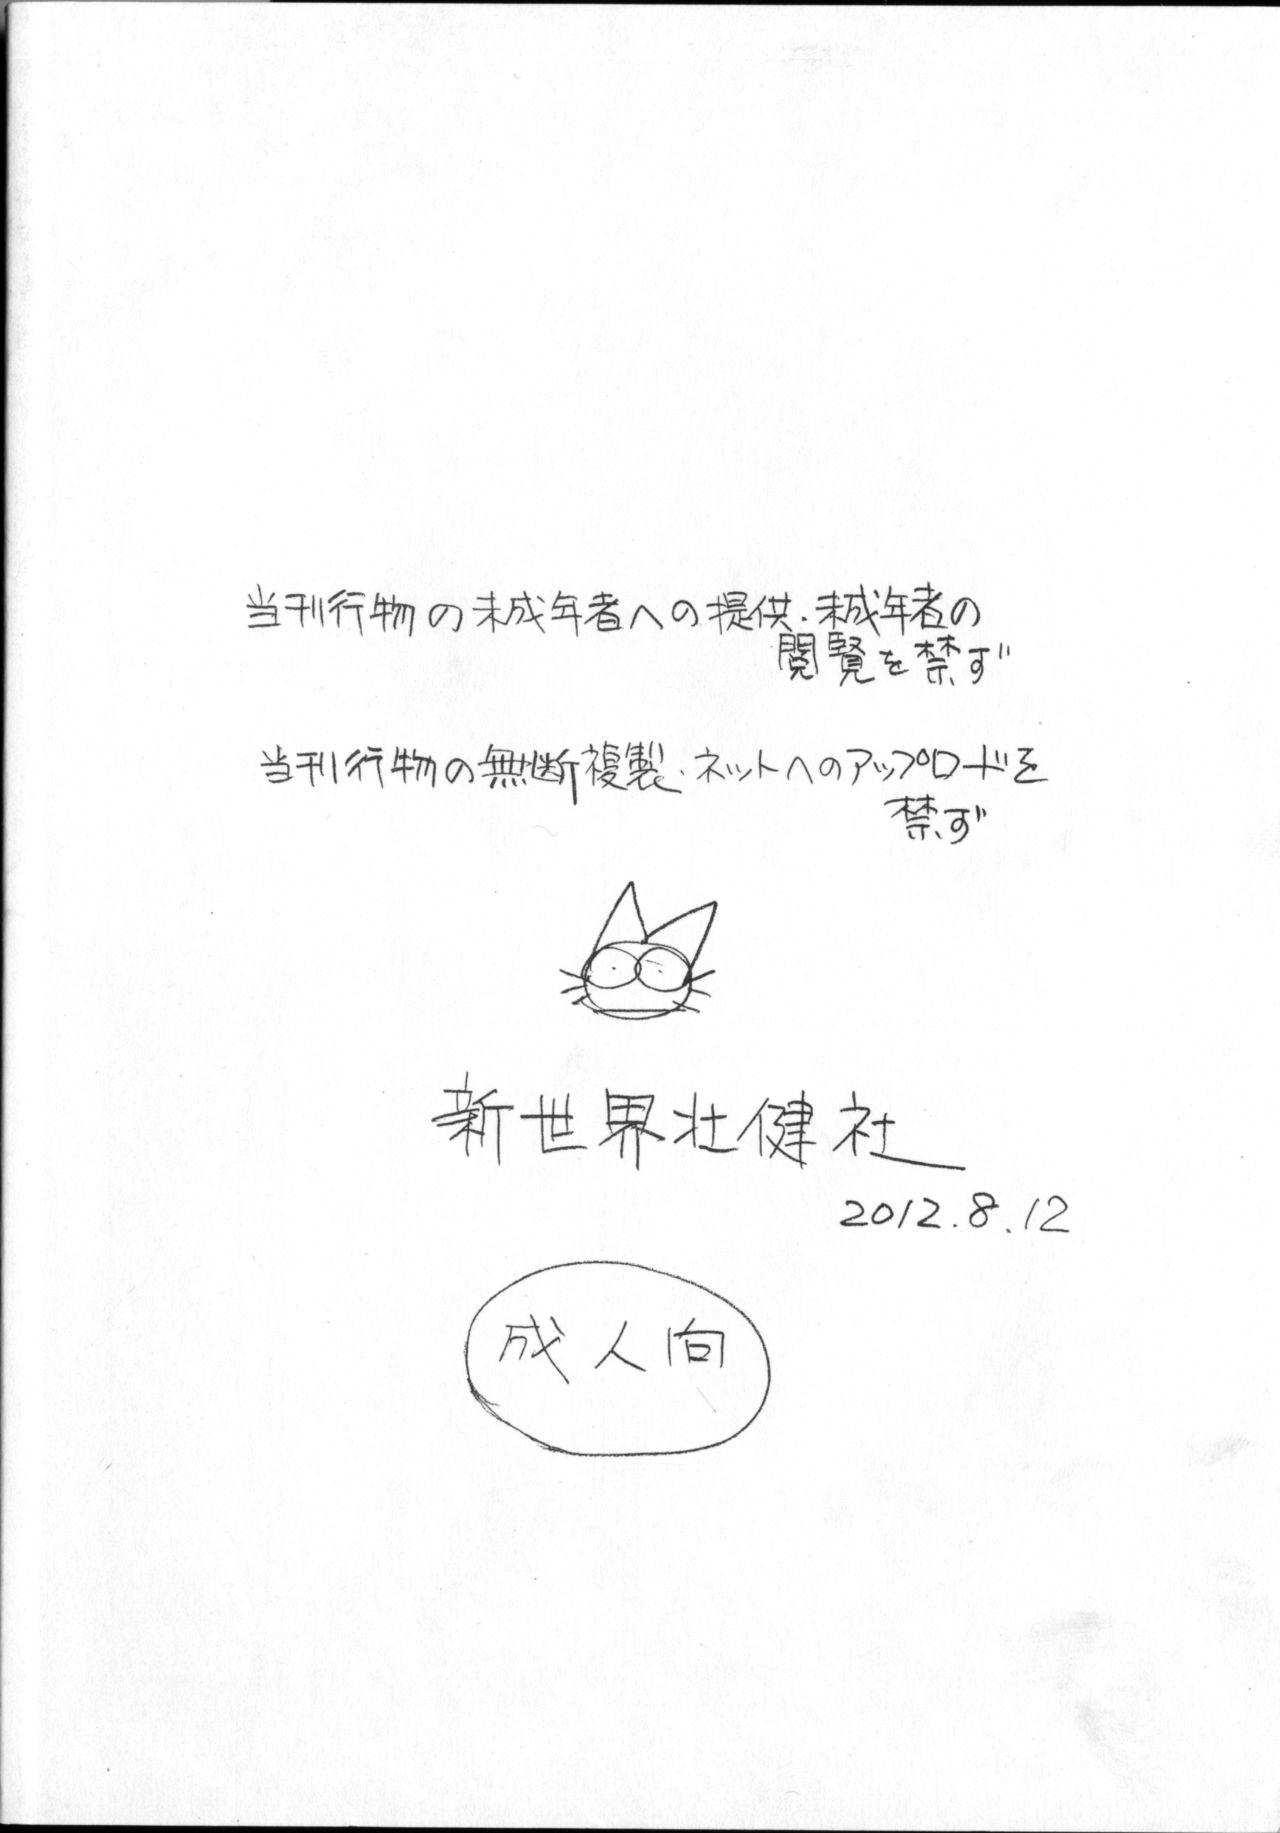 Daring Ashita ga Arusa. Enpitsu Kaki Eromanga 2012 Natsu Facials - Page 42